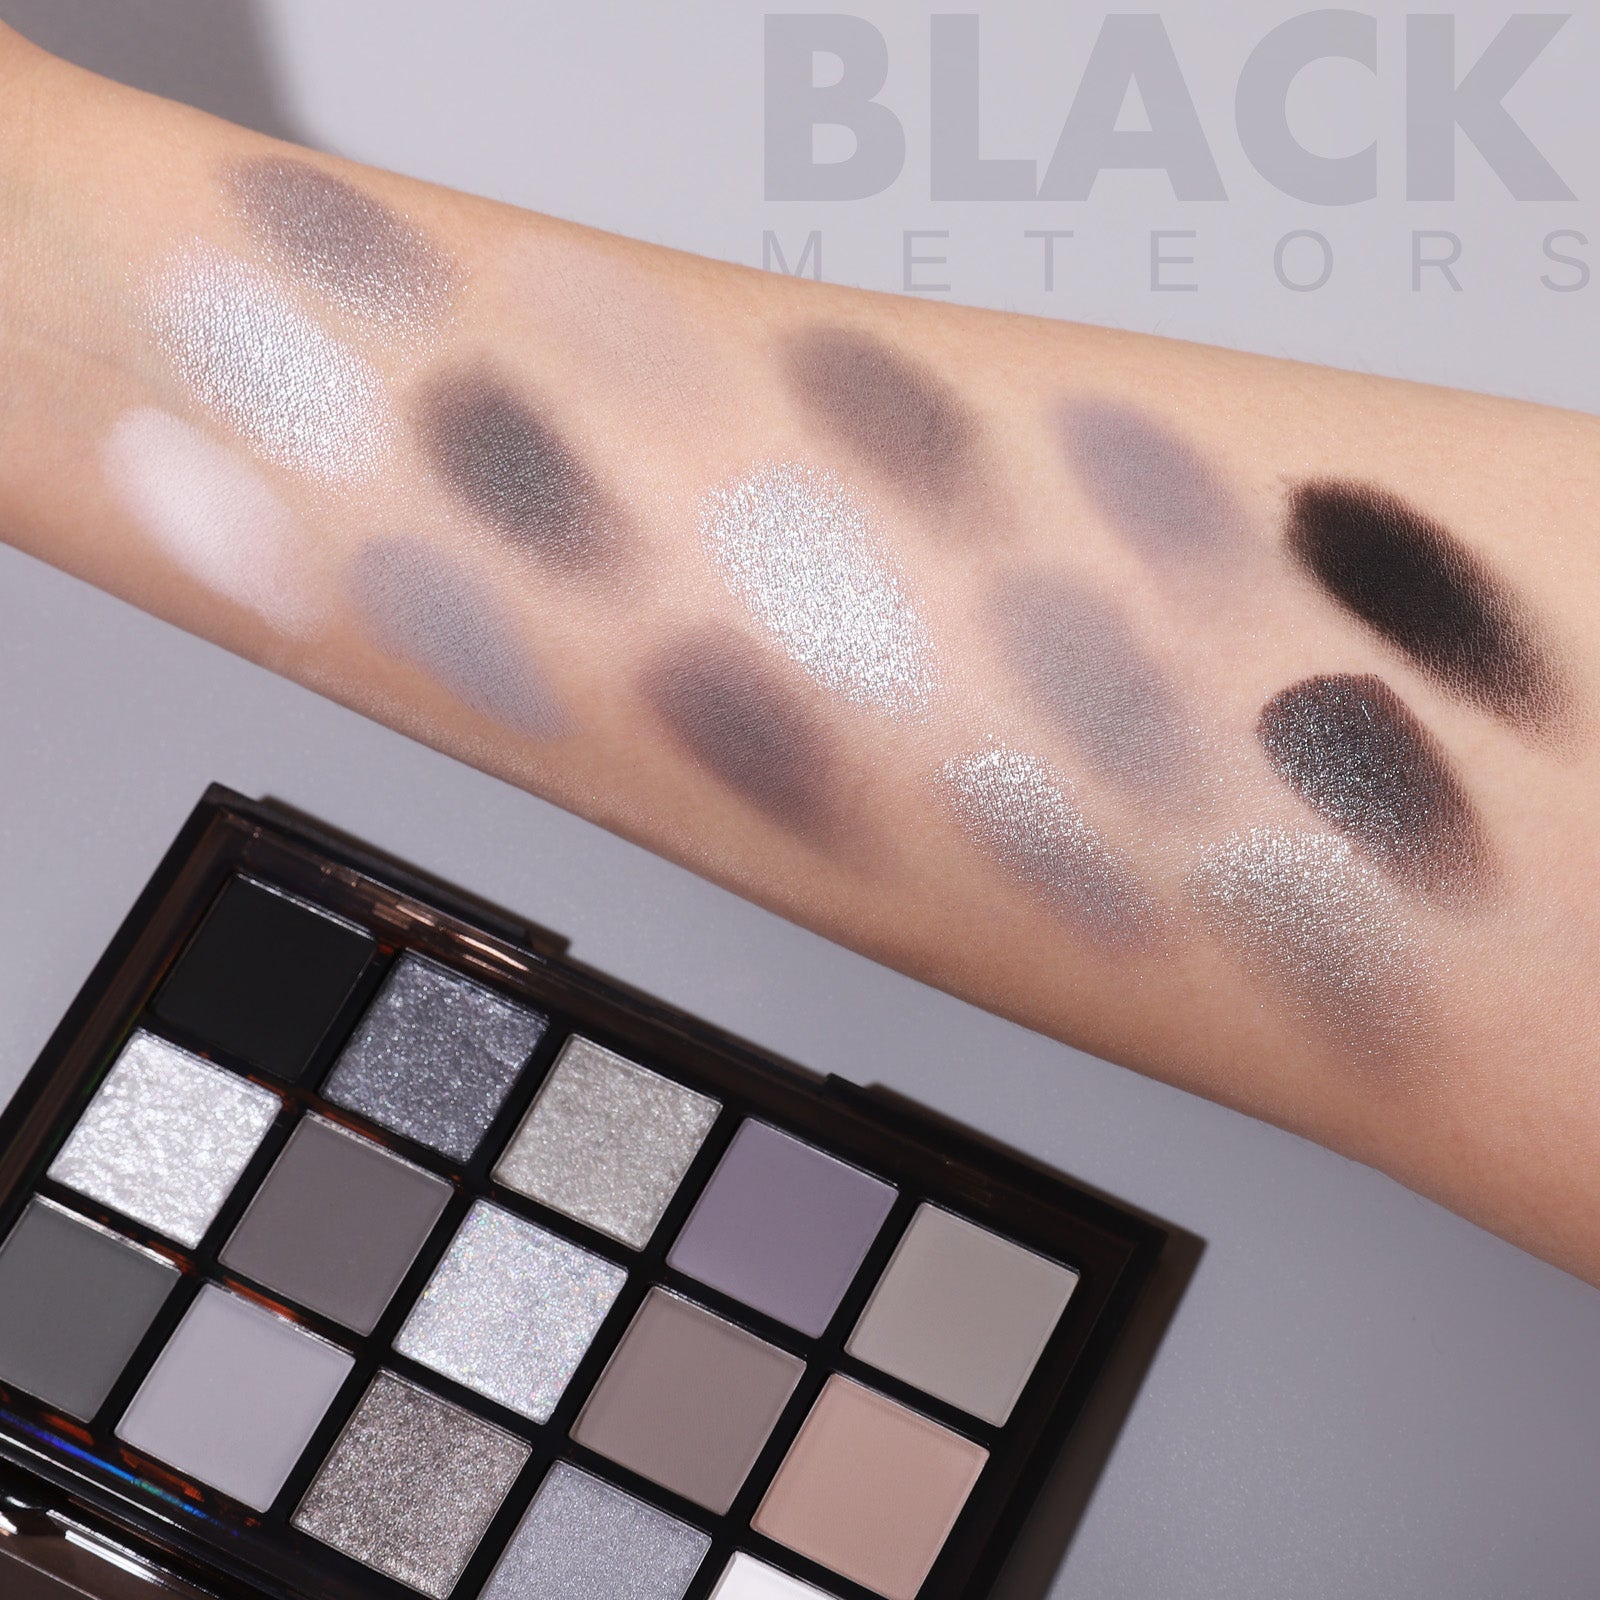 BLACK METEORS eyeshadow palette